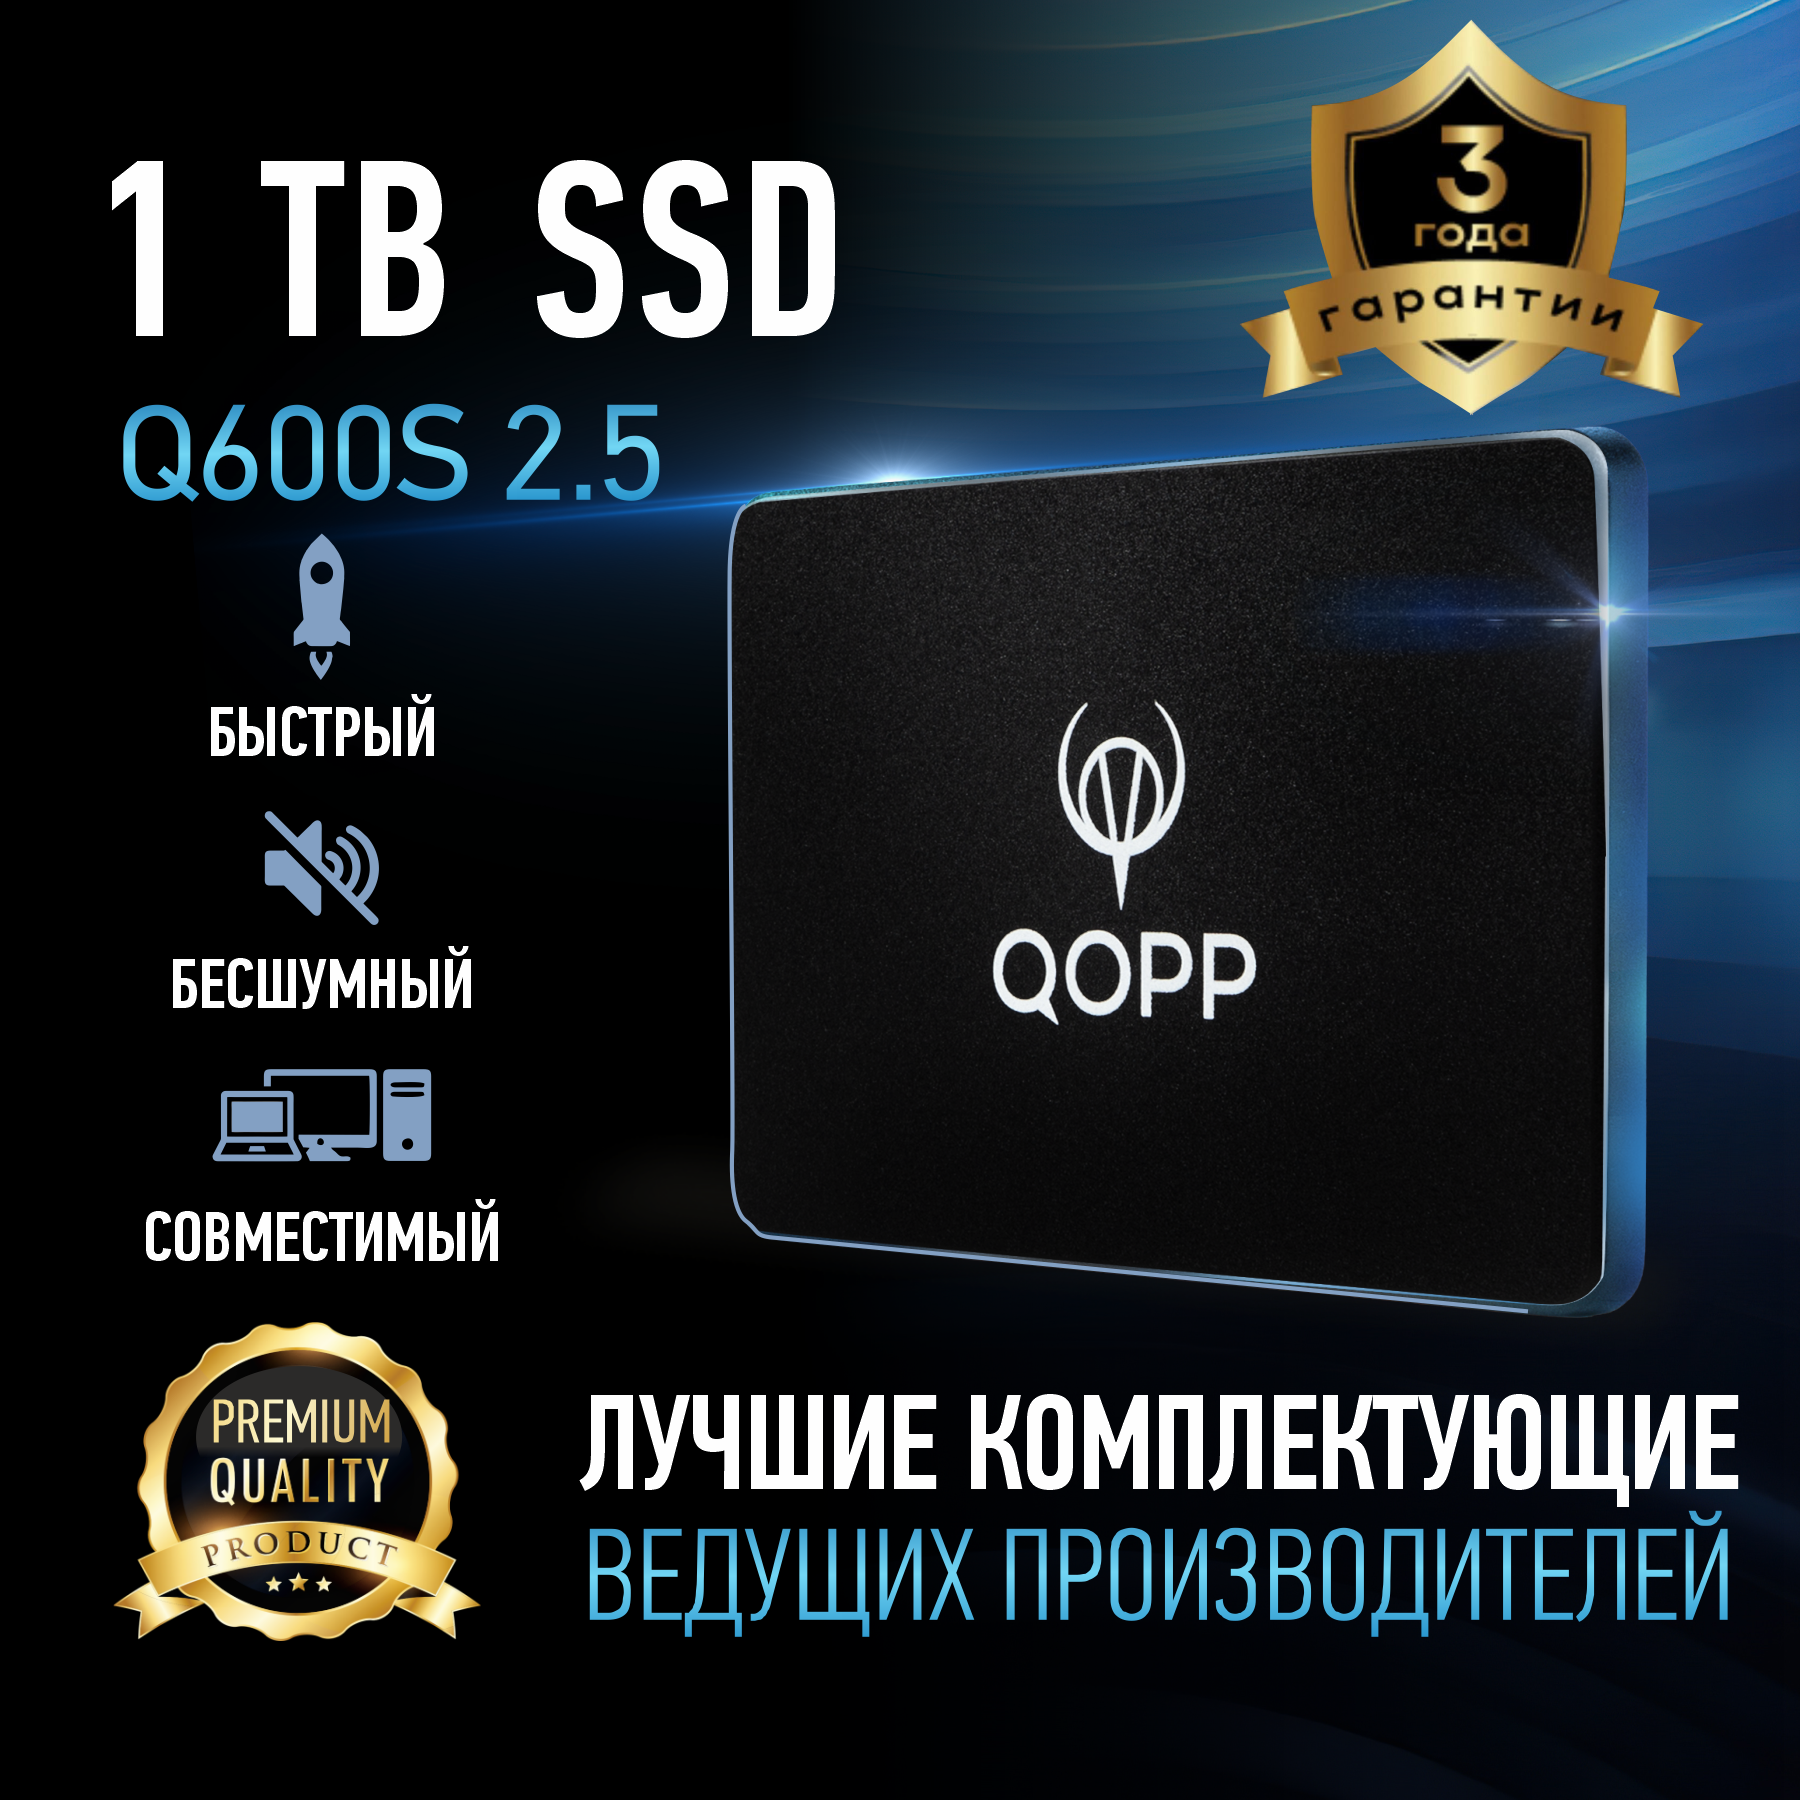 1 TB Внутренний SSD накопитель QOPP 2.5" SATA3 6.0 Гбит/с, жесткий диск для ноутбука и компьютера